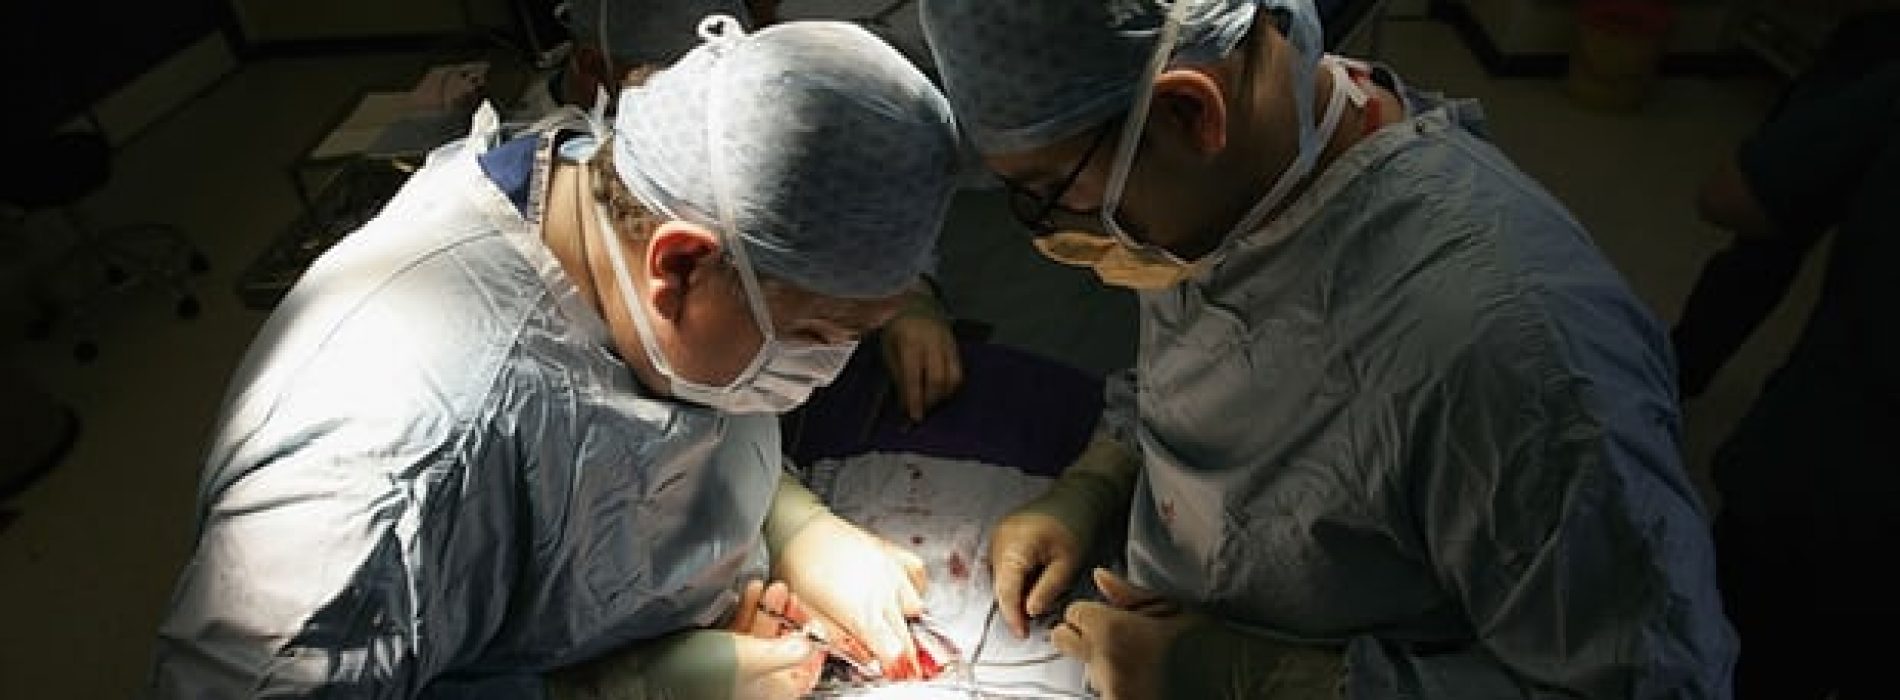 Veel operaties zijn onnodig en gevaarlijk. Vooraanstaande chirurg komt tot deze opmerkelijke inzichten